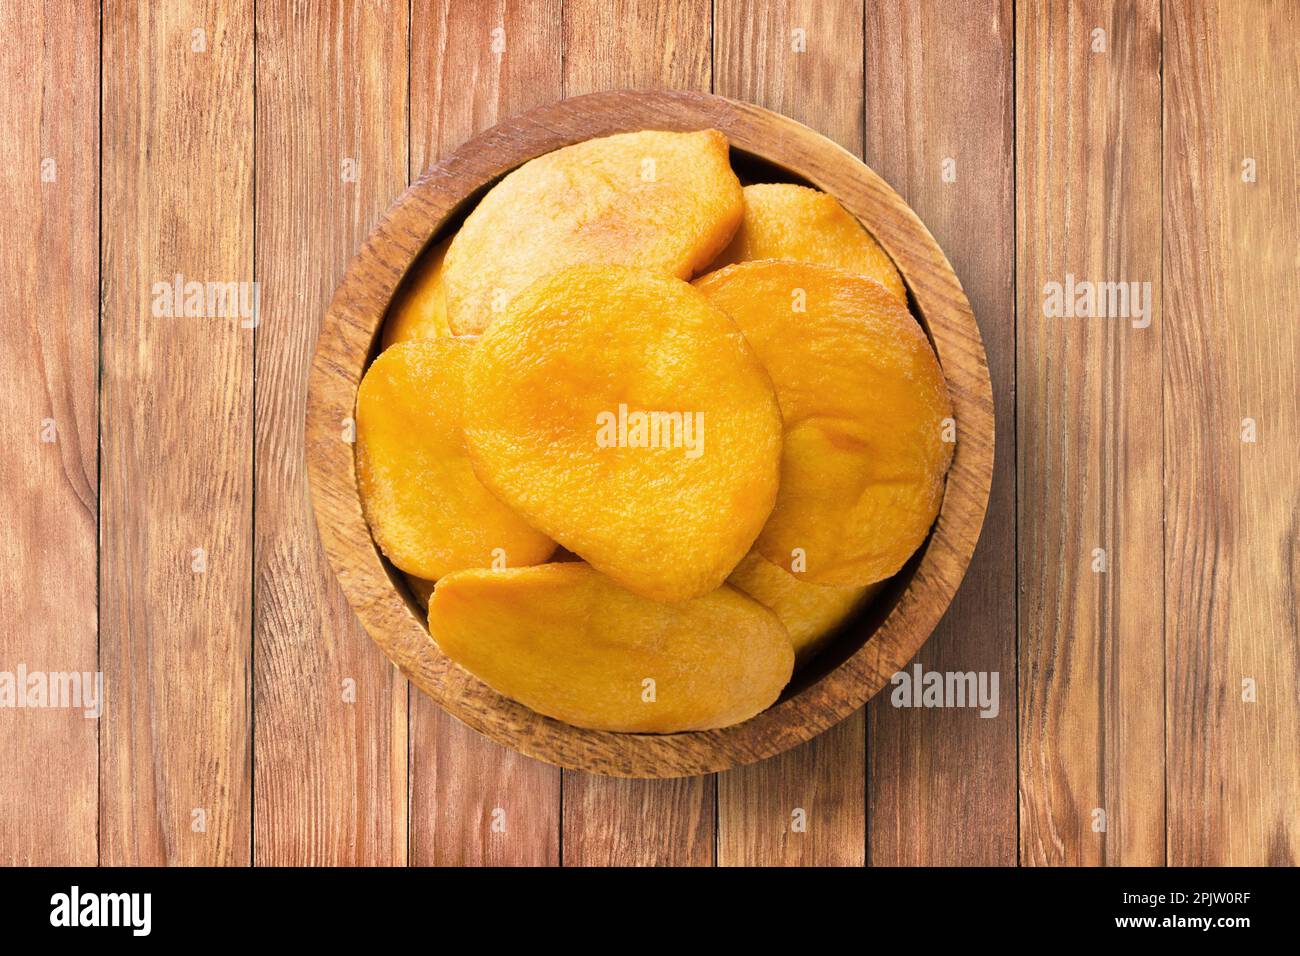 frutta secca, metà pesca in ciotola di legno sullo sfondo della tavola. cibo vegetale sano. Foto Stock